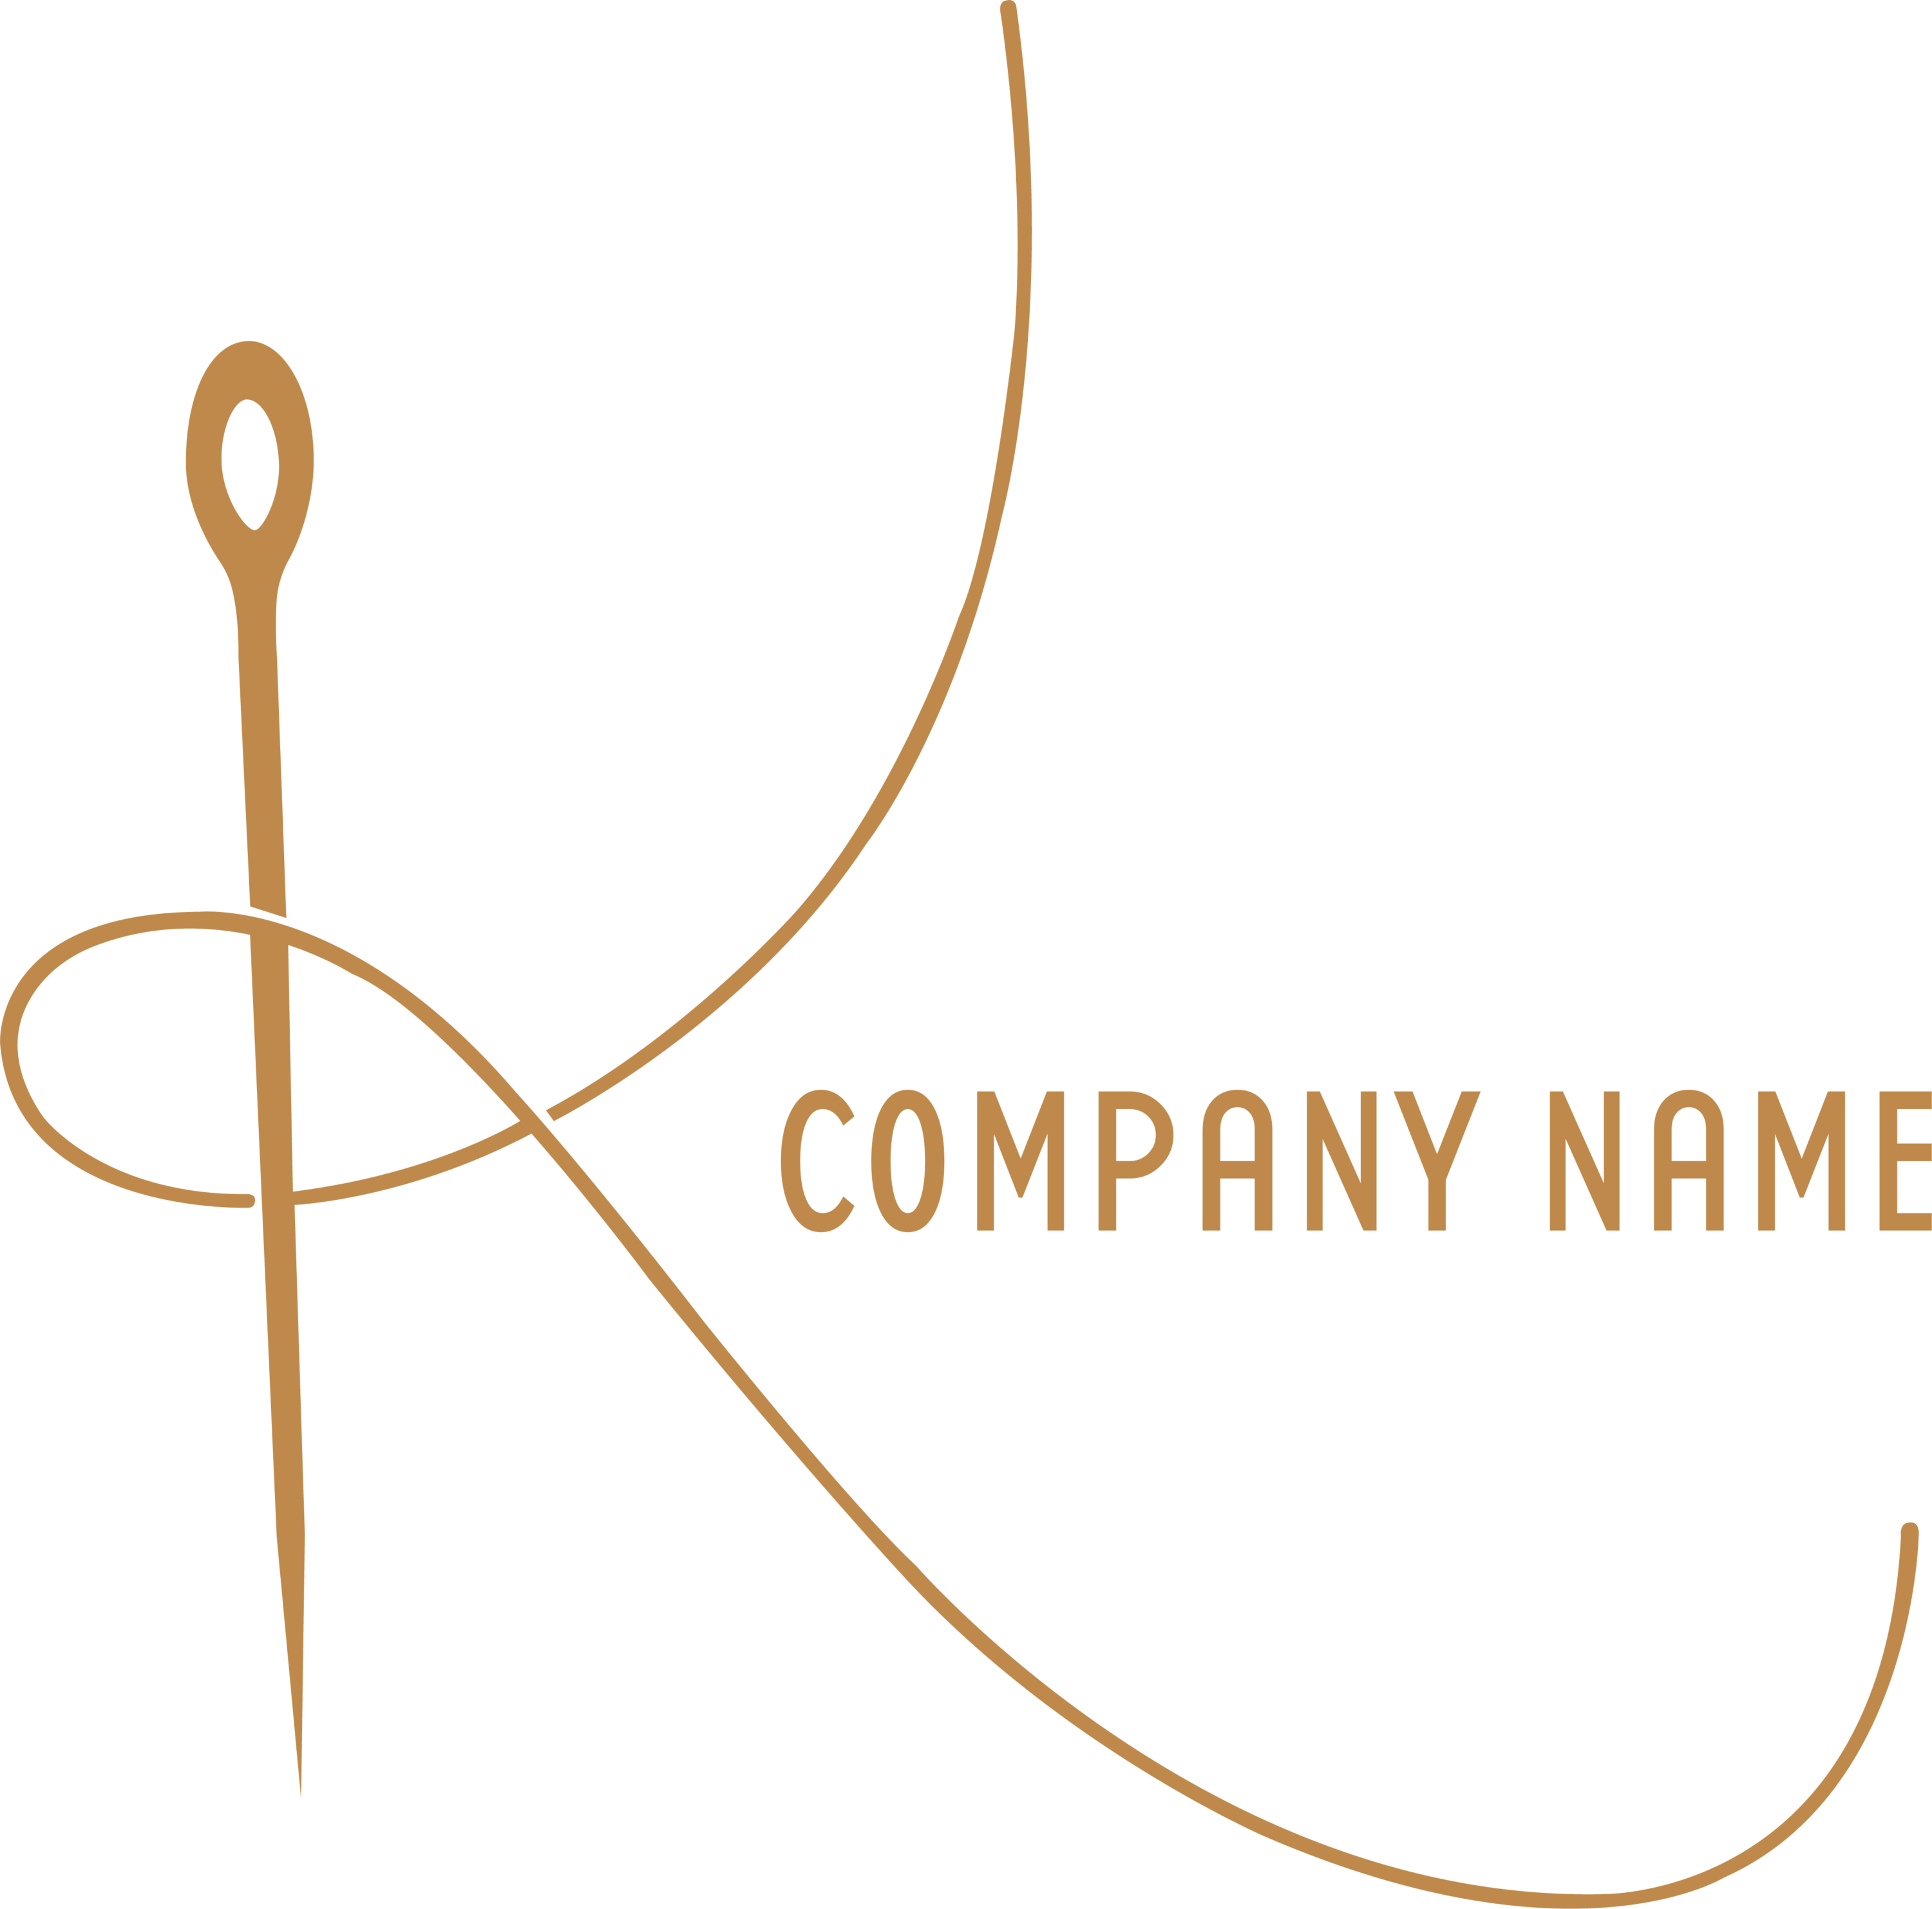 Clothing Brand Logo With Name | lupon.gov.ph